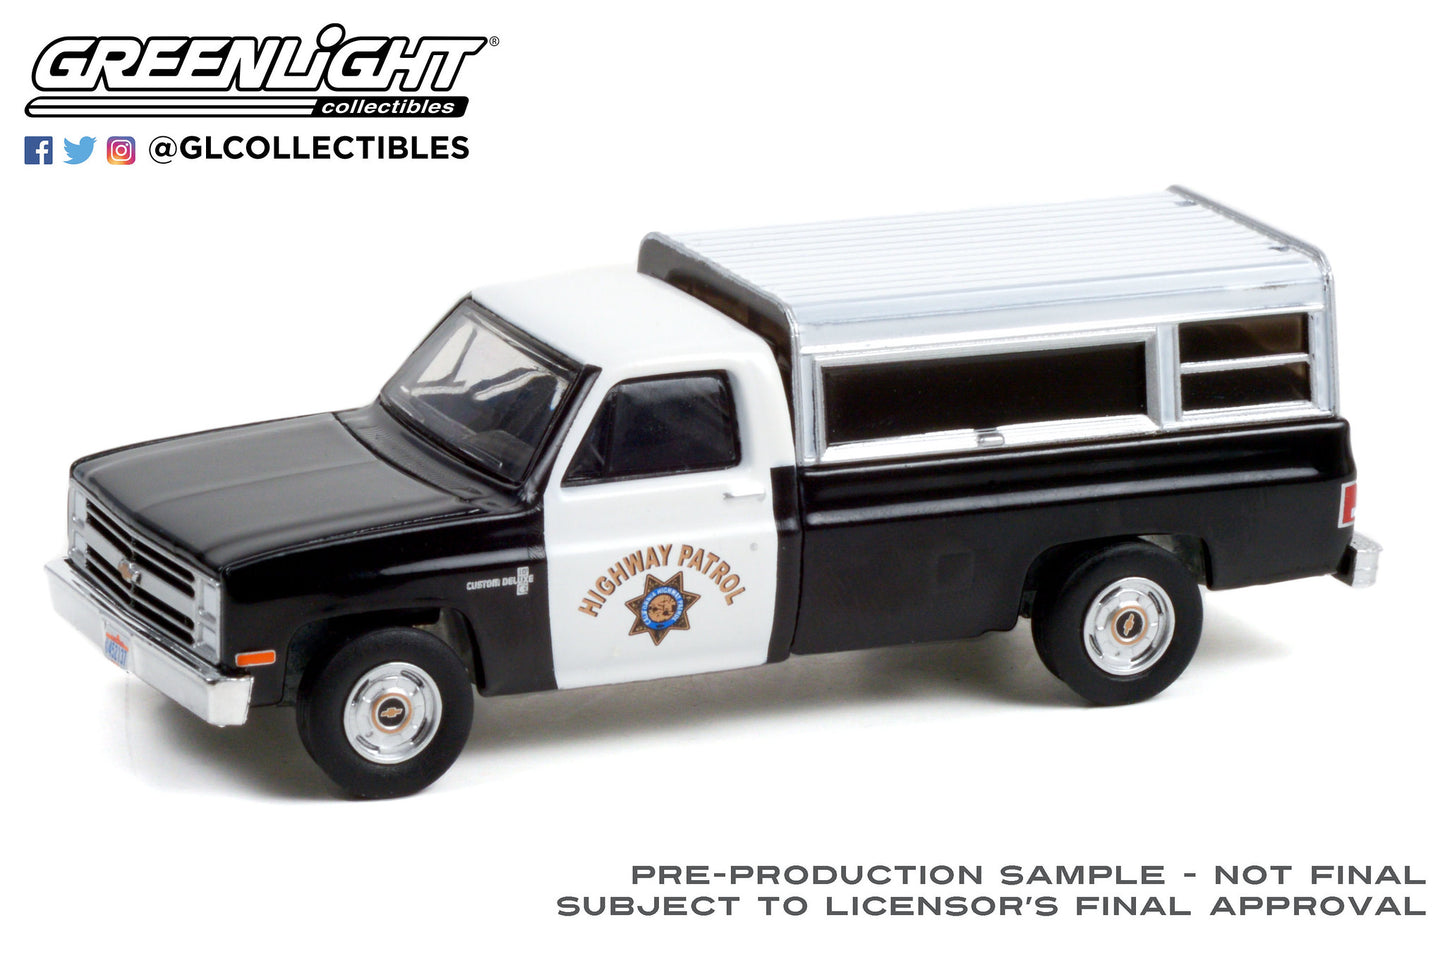 GreenLight 1:64 1987 Chevrolet C-10 - California Highway Patrol 30294